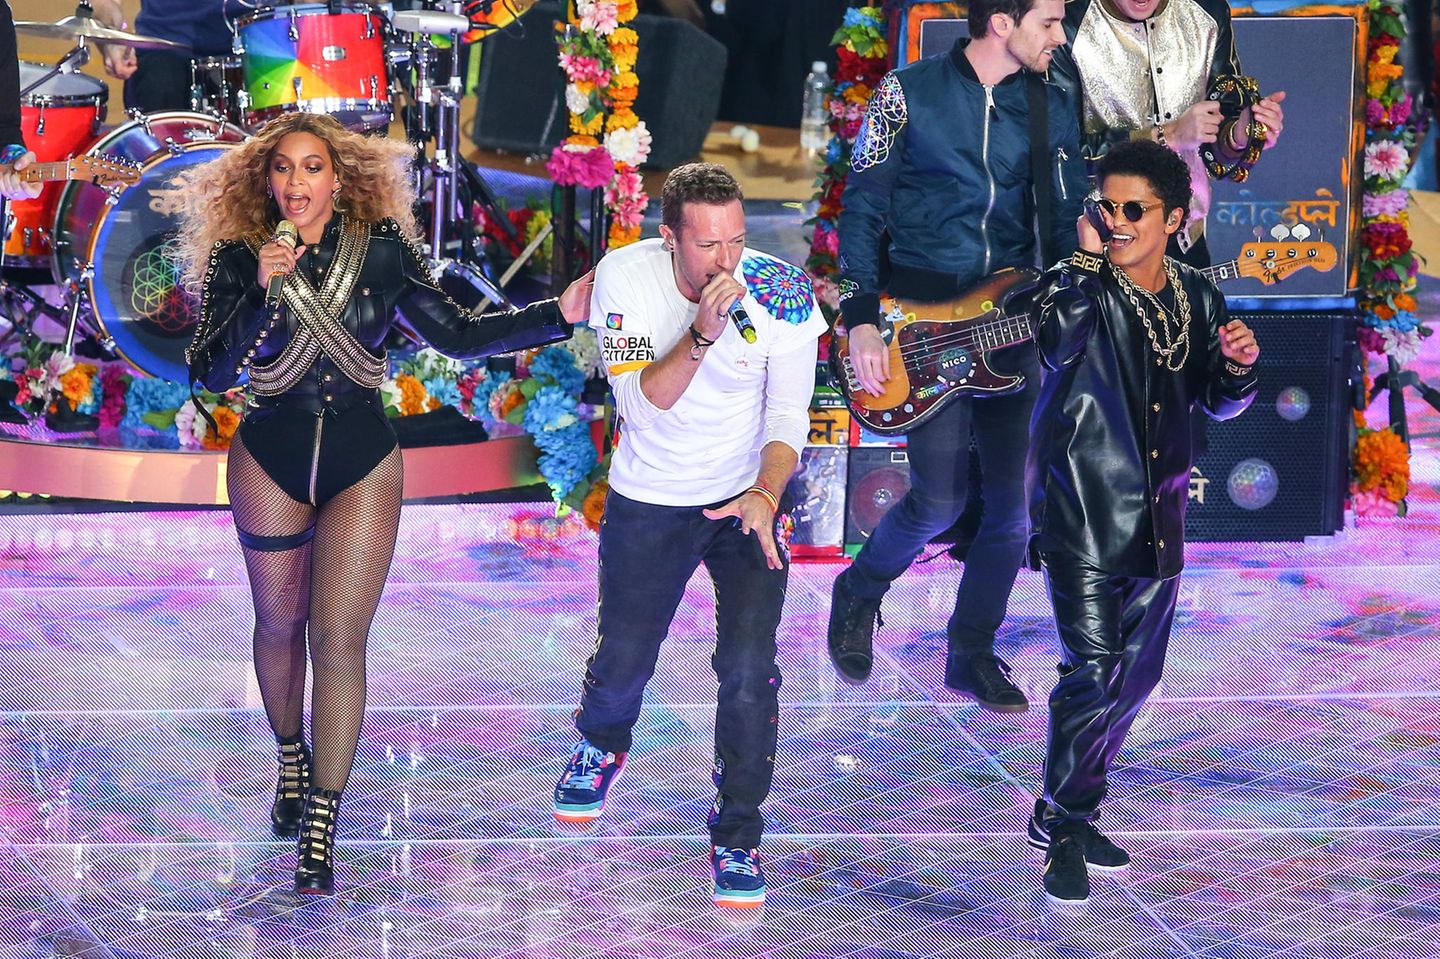 2016  Sexy, lässig und exzentrisch: So könnte man die ungewöhnliche Mischung der Outfits von  Beyoncé, Chris Martin und Bruno Mars beim 50. Super Bowl im kalifornischen Santa Clara beschreiben.